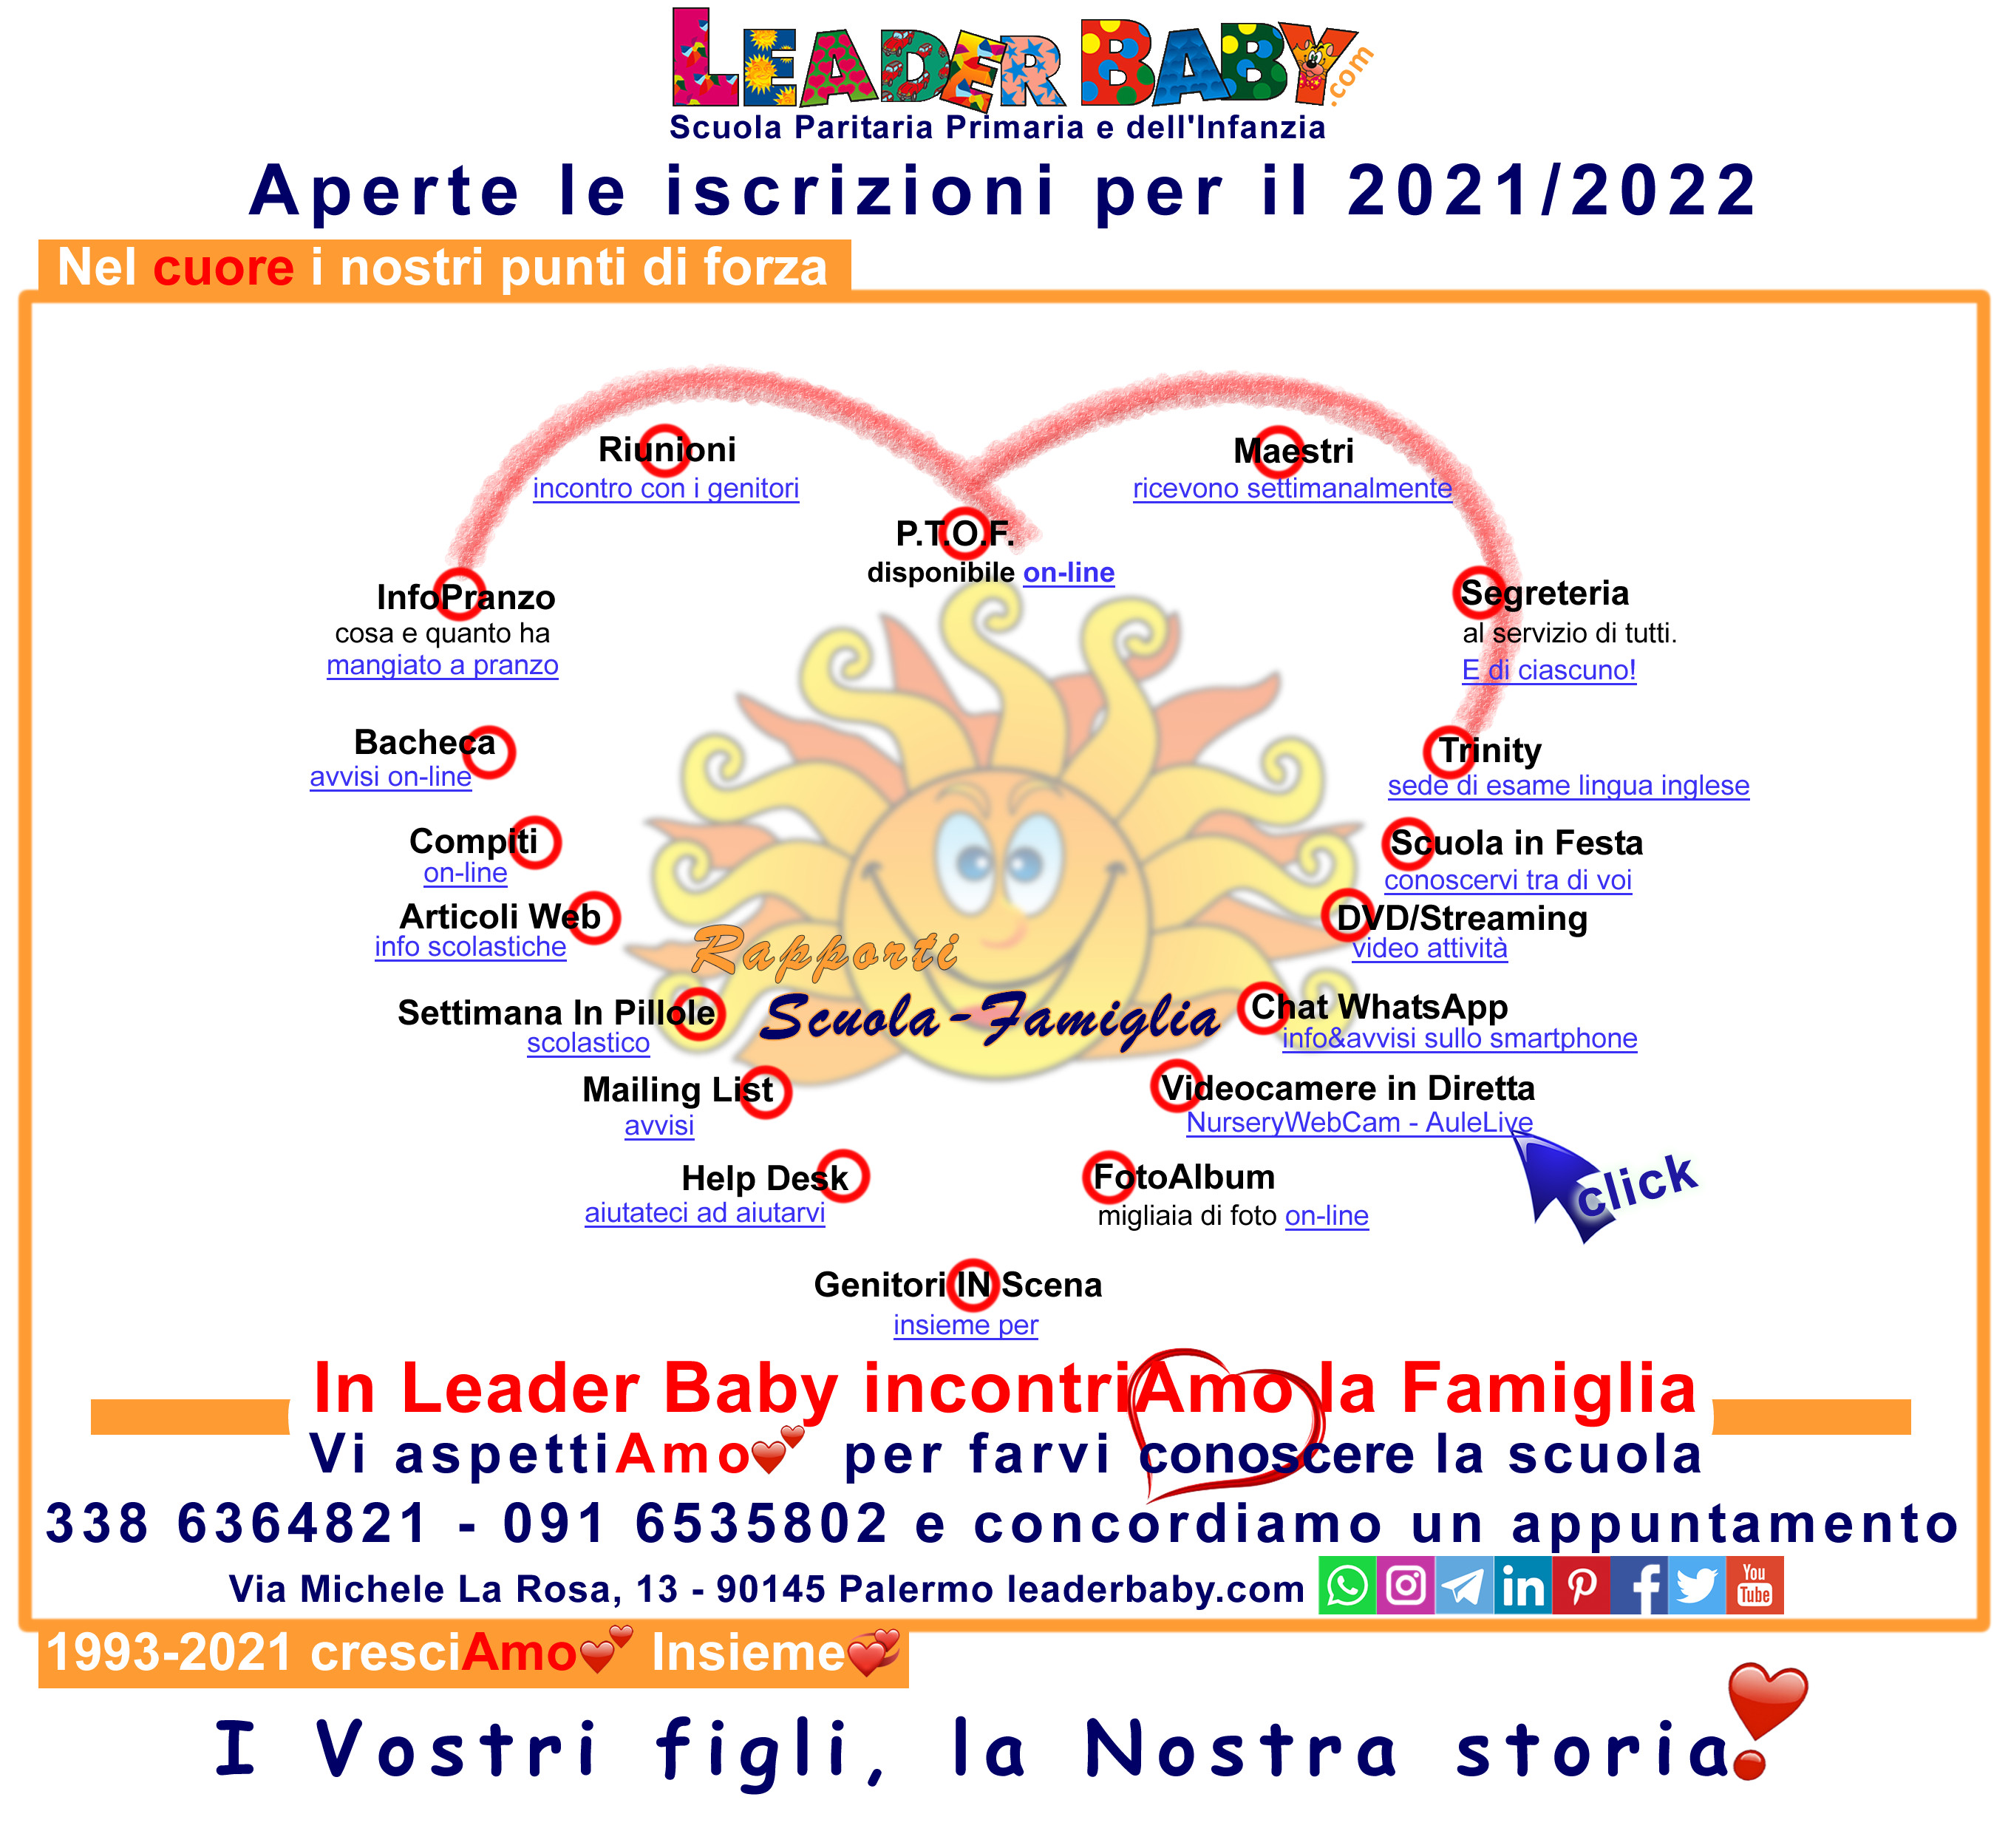 Nel cuore la passione, la professionalità: punti di forza del Leader Baby